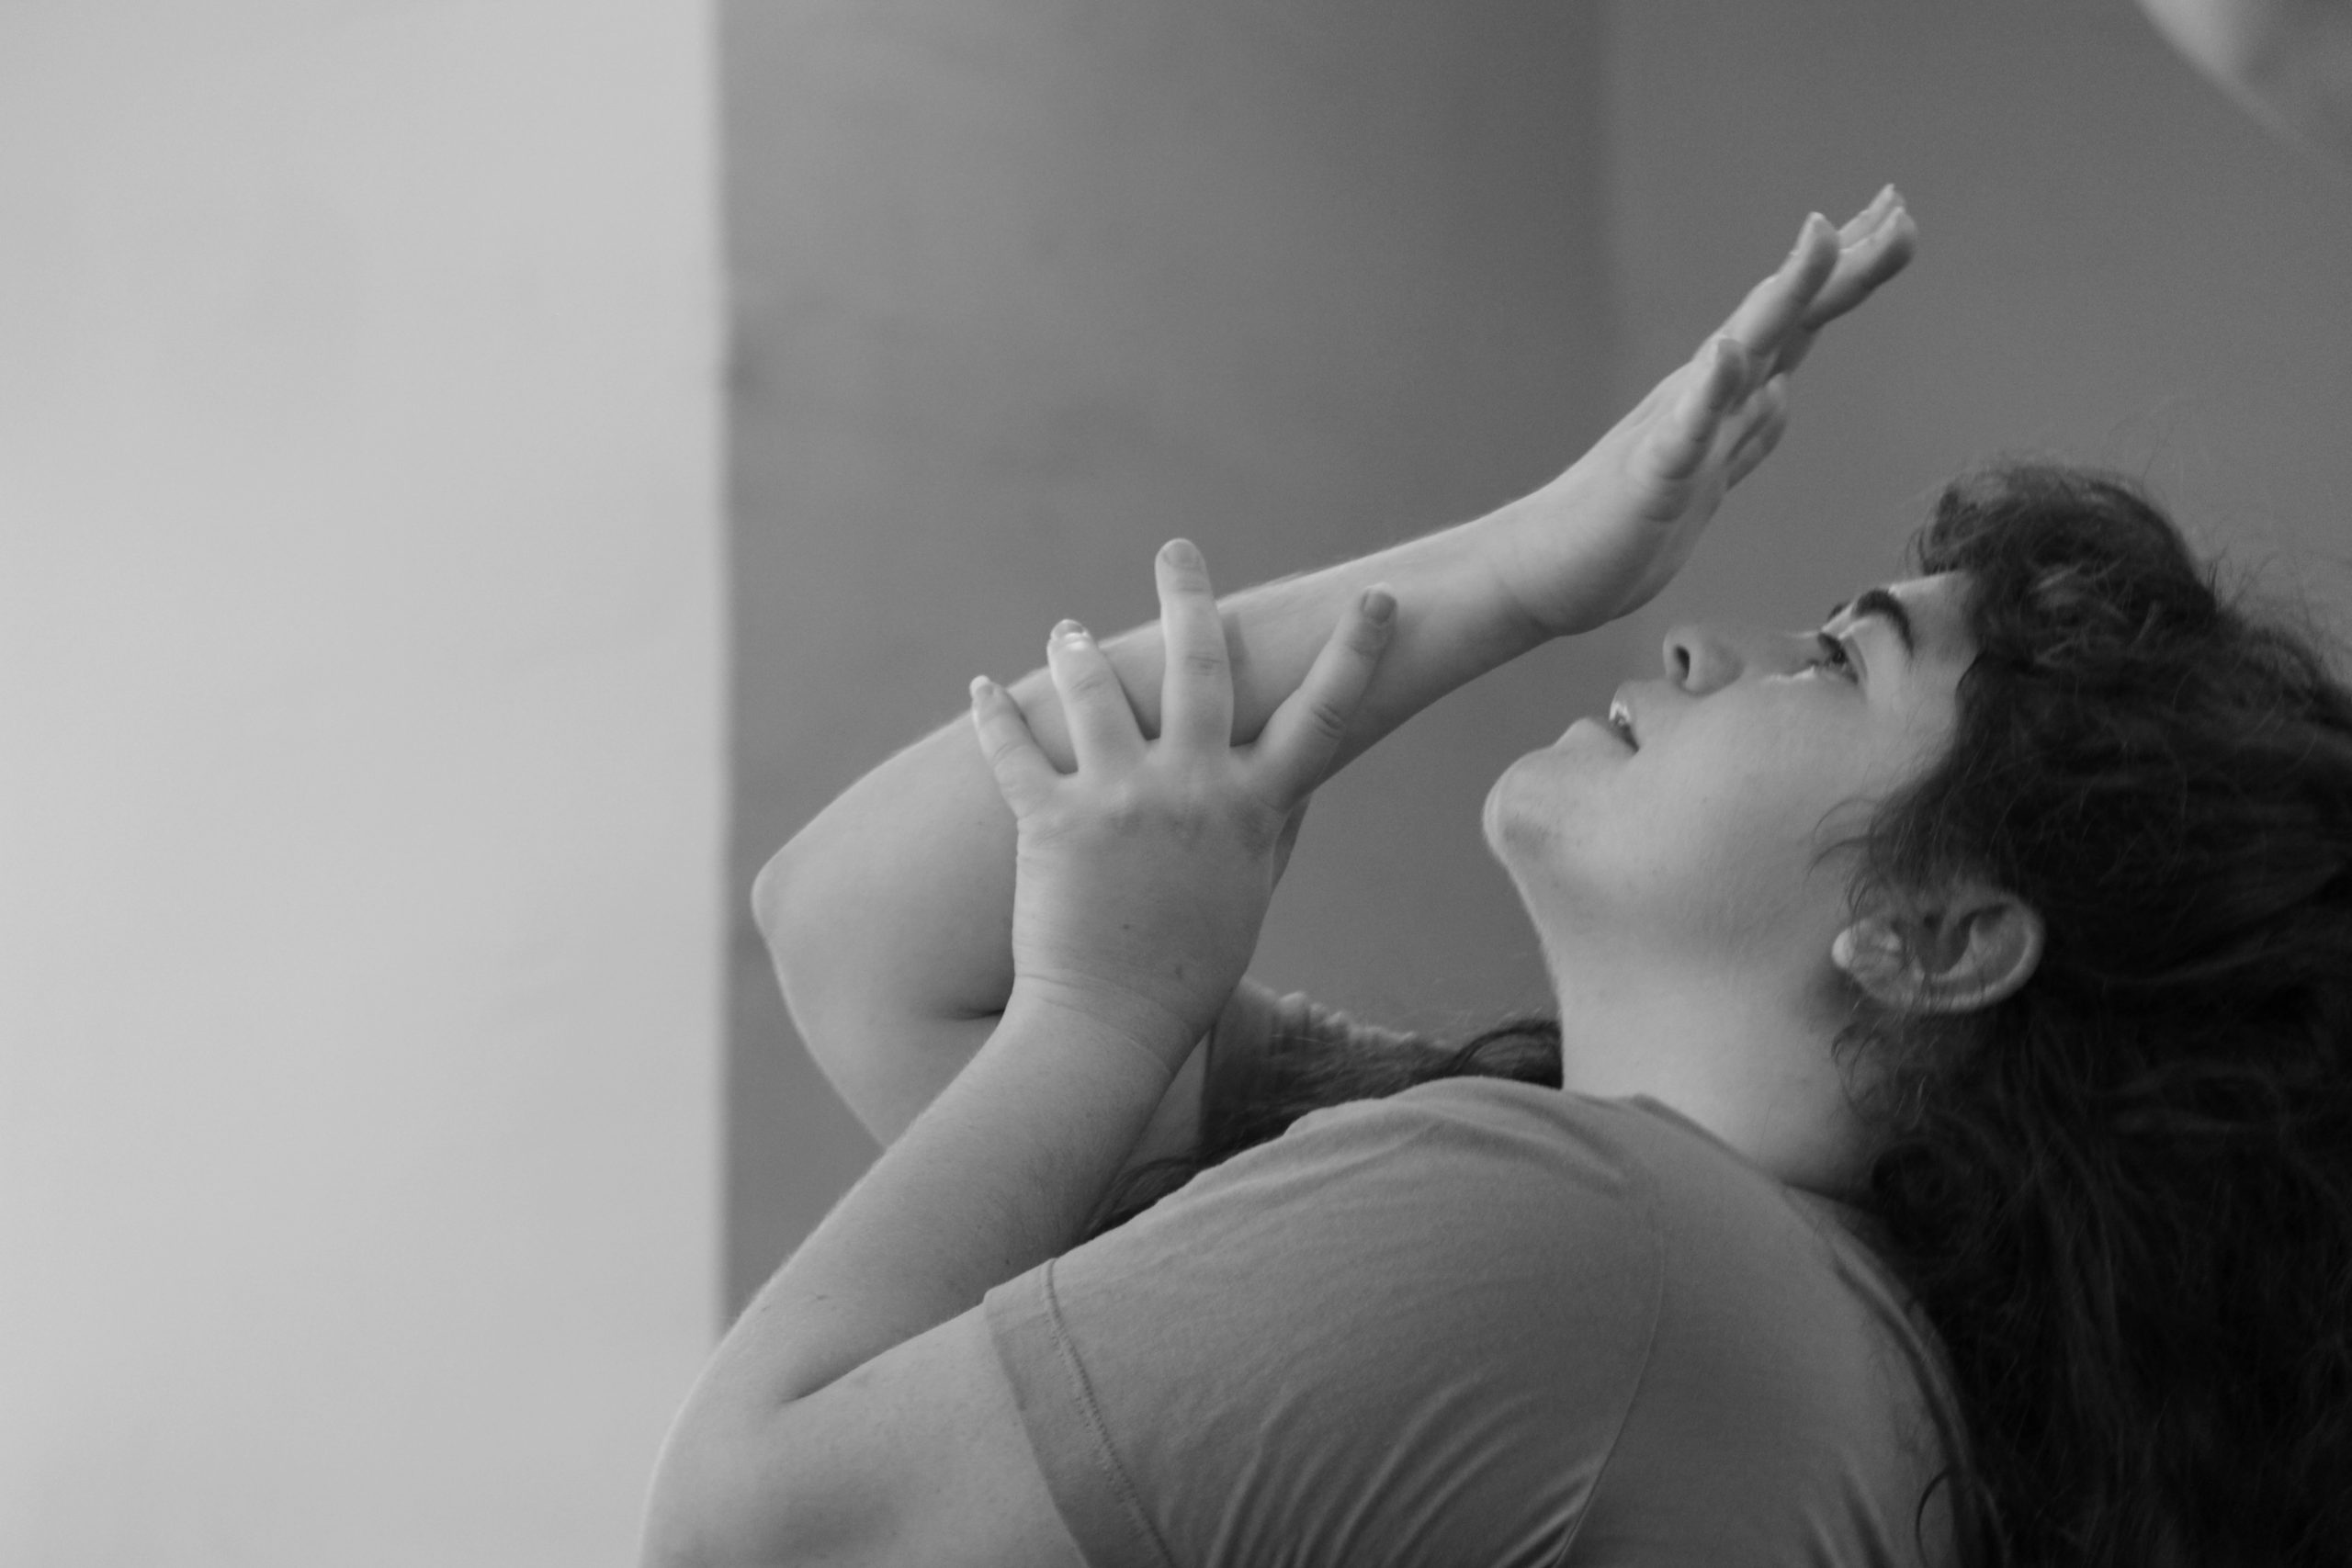 תמונת דיוקן פרופיל בשחור לבן: מישהי מניחה יד על יד מעל פניה.